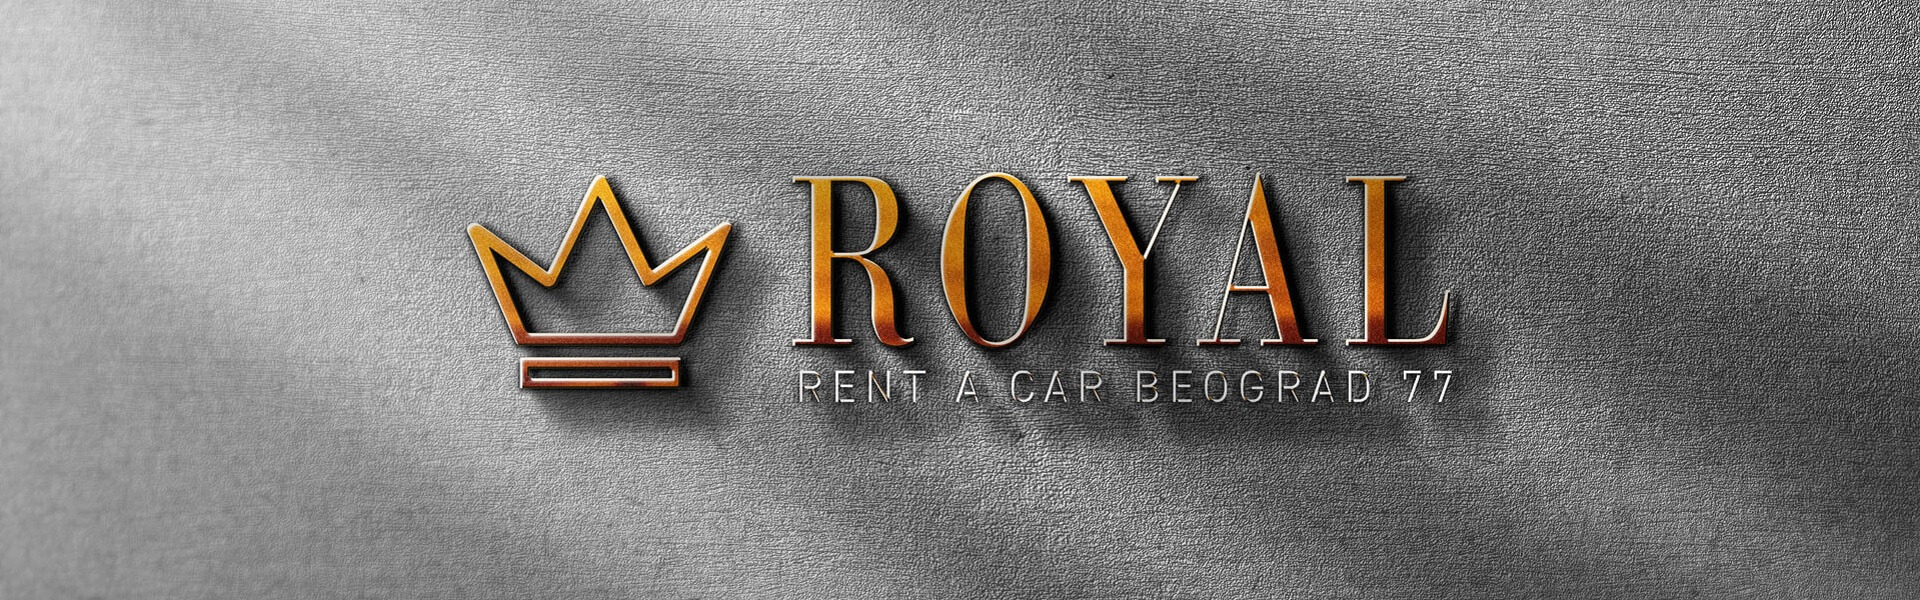 Rent a car Belgrade Aldi | Car rental Belgrade Royal